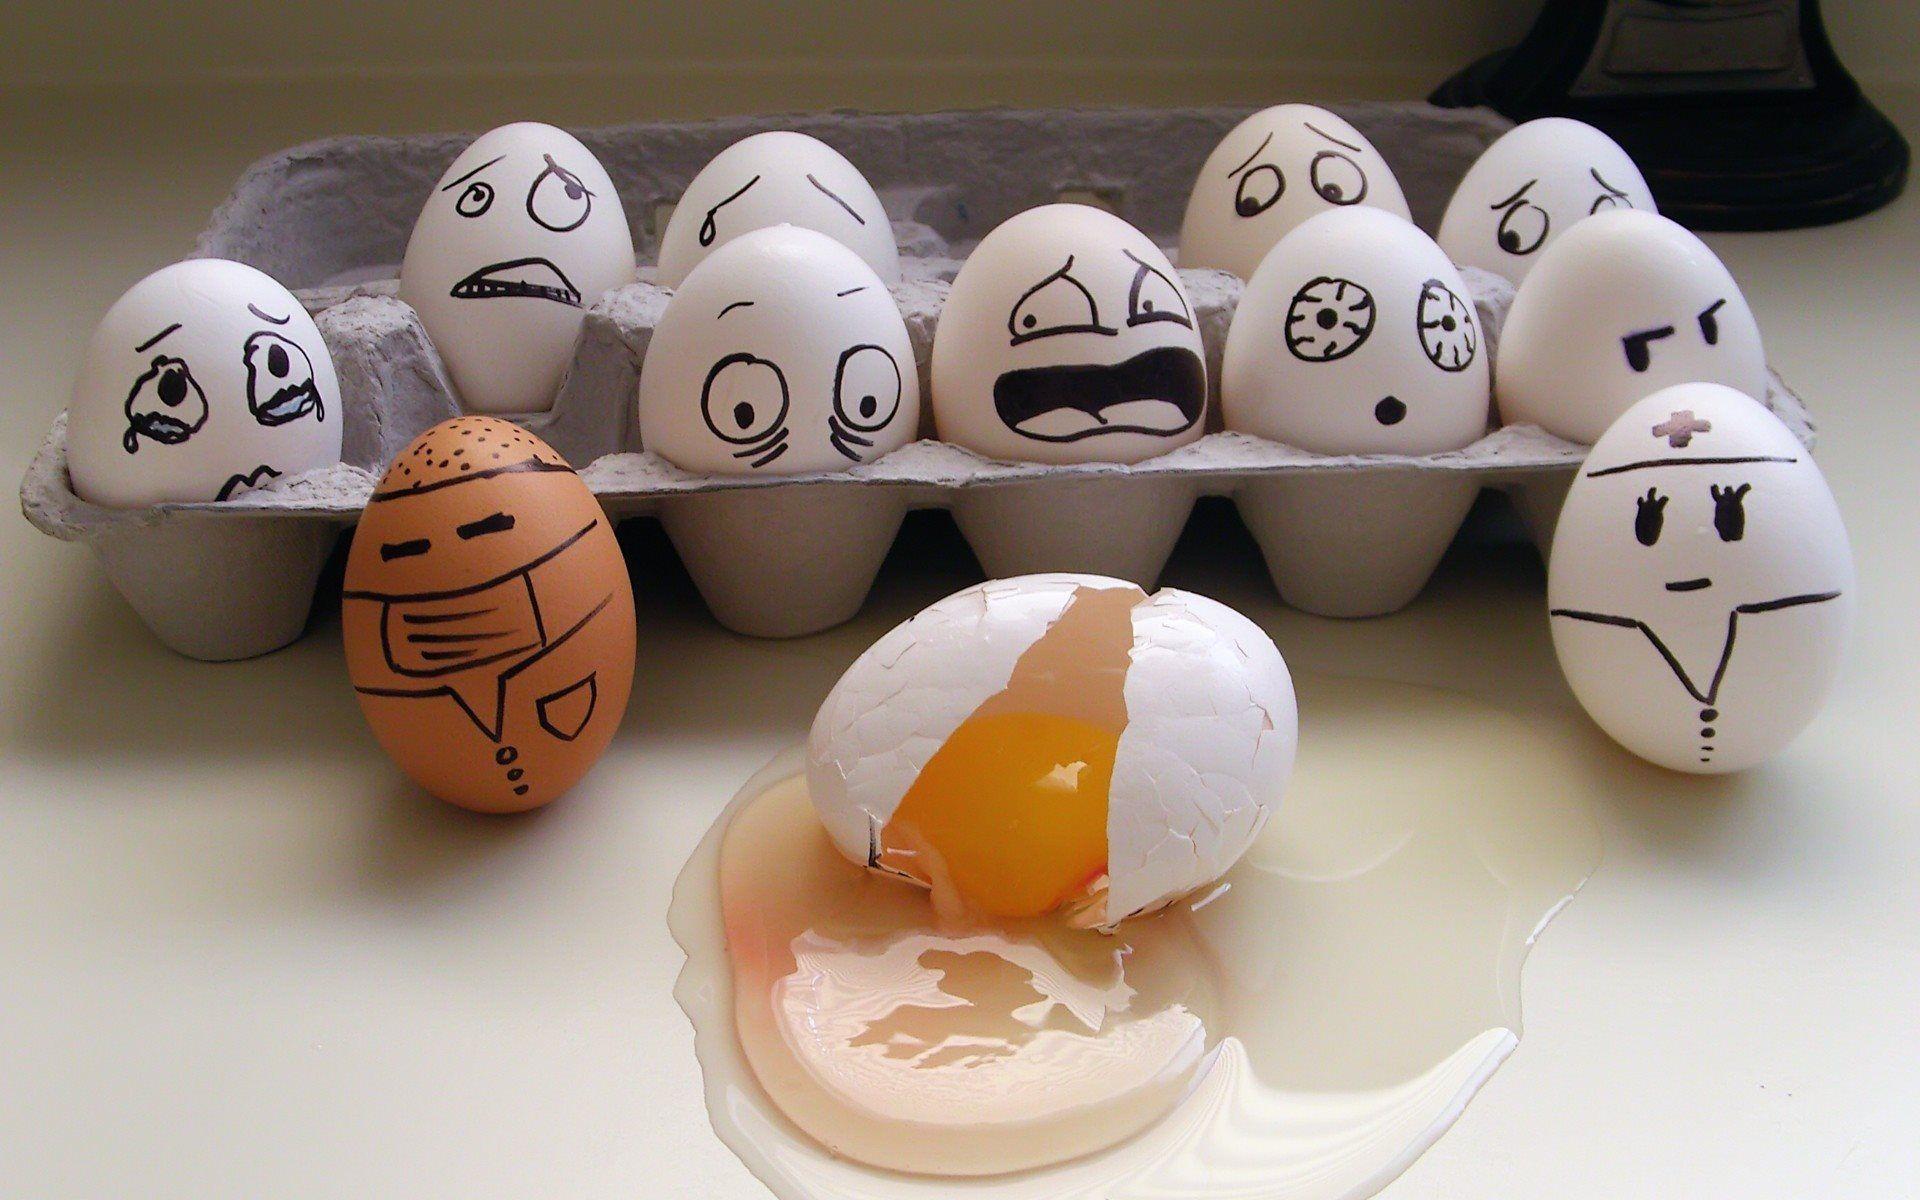 تصویر جالب و بامزه از تخم مرغ برای استفاده به عنوان کاور مجله و پوستر 